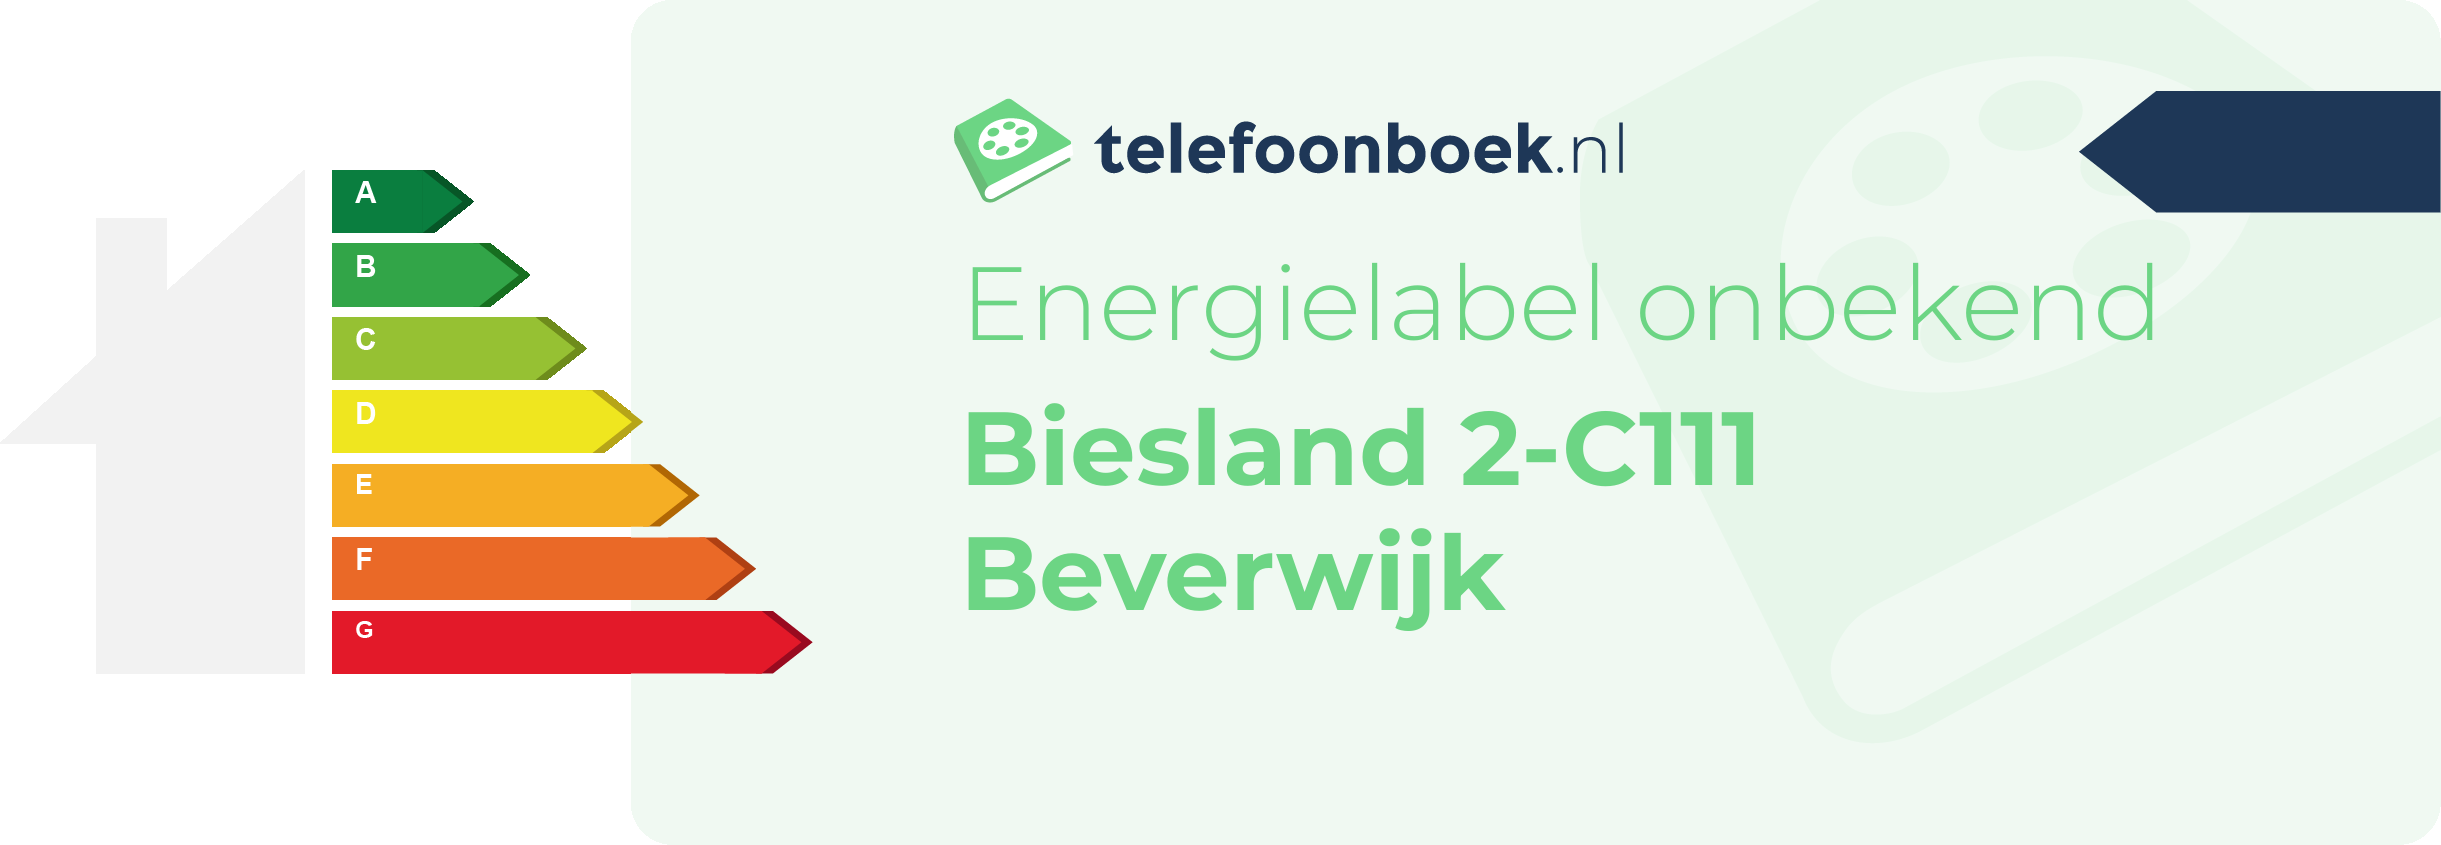 Energielabel Biesland 2-C111 Beverwijk